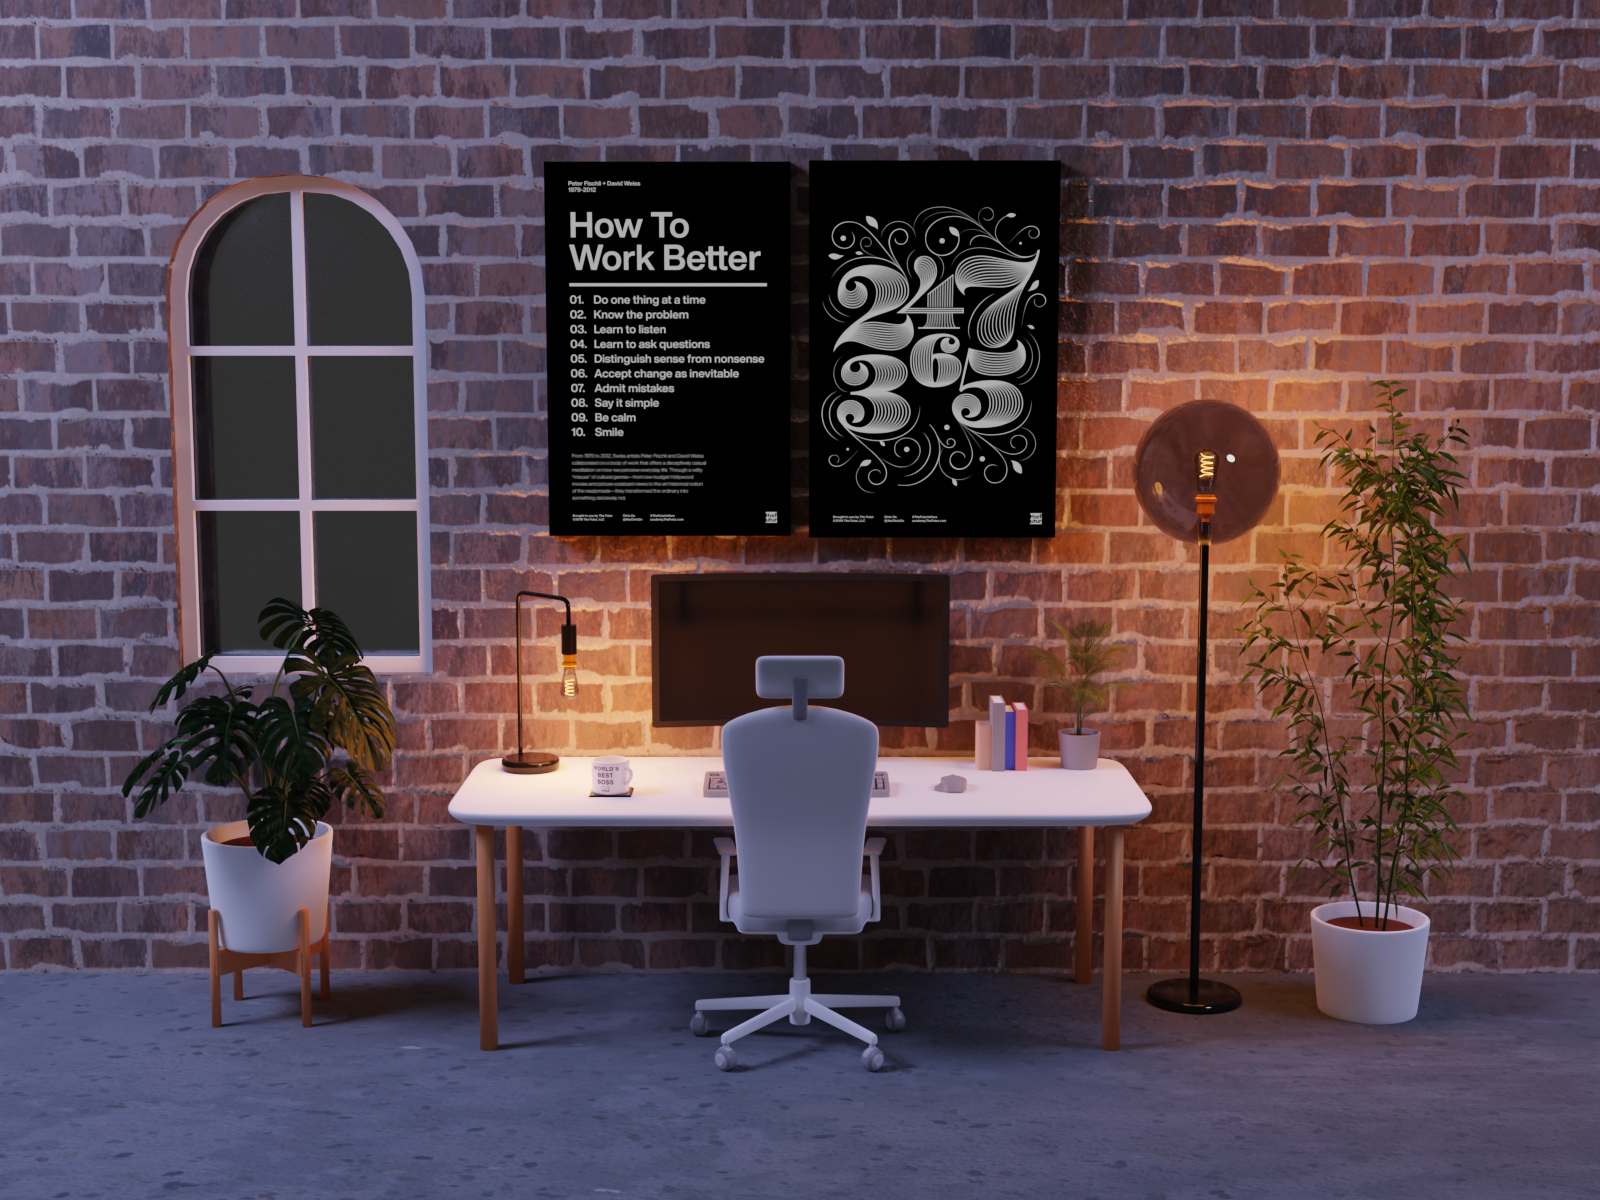 Virtual Meeting Background - Office Night: Nếu bạn muốn tạo ấn tượng mạnh mẽ trong các cuộc họp trực tuyến, hãy xem hình ảnh đẹp của Virtual Meeting Background - Office Night. Với cảnh đêm của văn phòng đầy sáng tạo này sẽ giúp bạn tạo điểm nhấn và ấn tượng khó phai trong mắt đối tác và khách hàng. Hãy xem ngay nhé!